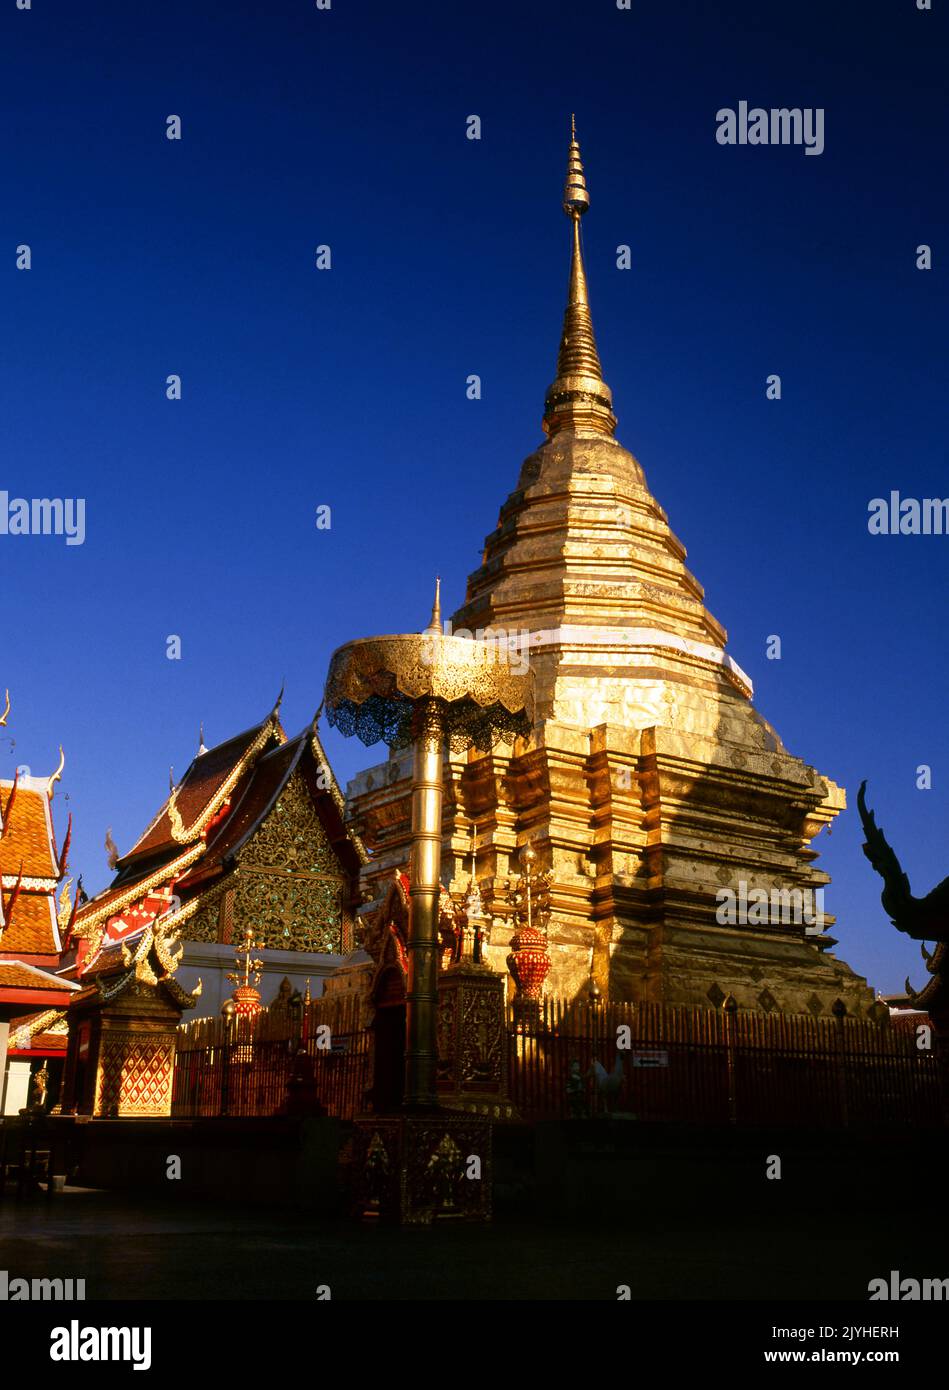 Tailandia: Wat Phrathat Doi Suthep, un templo budista Theravada situado en Doi Suthep (montaña Suthep), con vistas a la ciudad de Chiang Mai. El magnífico chedi dorado, que data del siglo 16th, ofrece magníficas vistas a través del valle de Chiang Mai hasta el río Ping. El rey Mengrai fundó la ciudad de Chiang Mai (que significa 'nueva ciudad') en 1296, y sucedió a Chiang Rai como capital del reino Lanna. Foto de stock